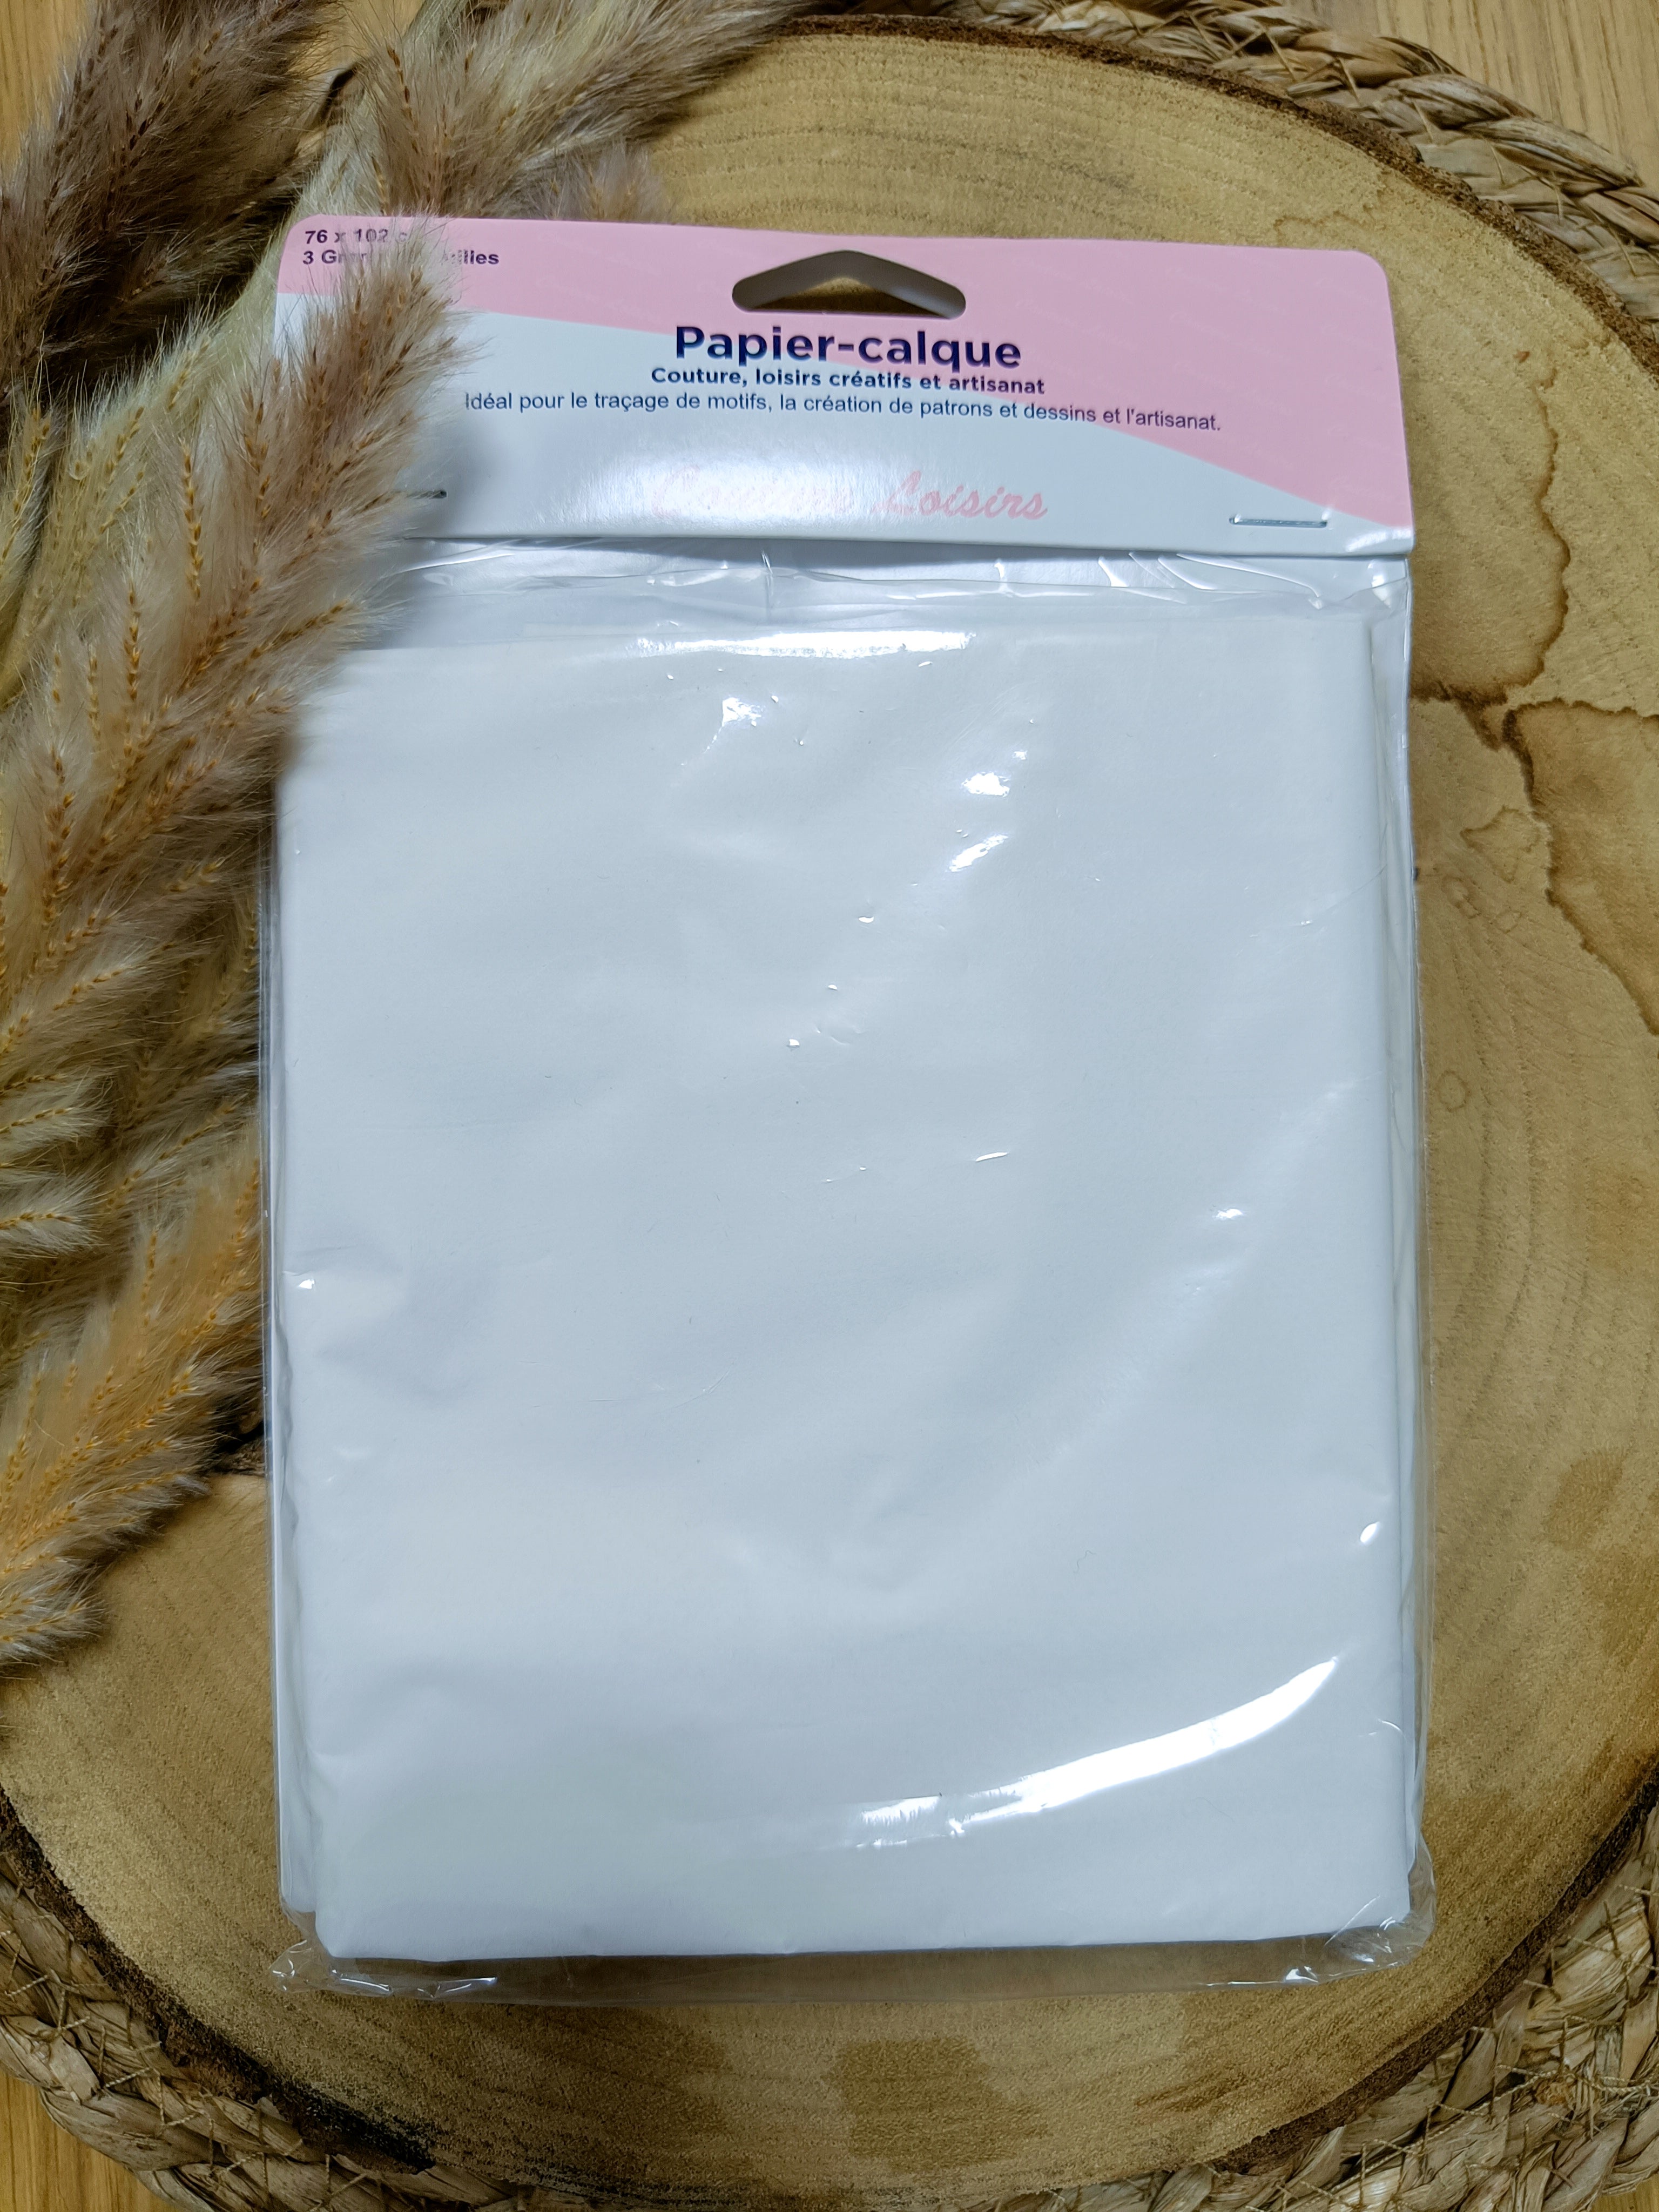 Yoosso 50 PCS A4 Papier Calque, a Patron Couture Feuille de Dessin Papier  Blanc pour Croquis Traçage Dessin